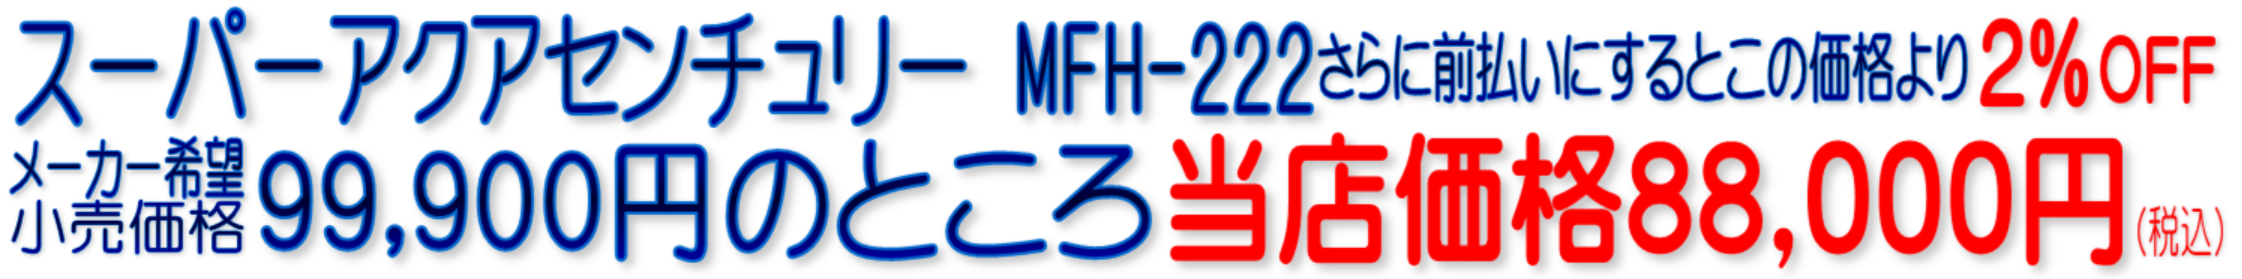 MFH-222